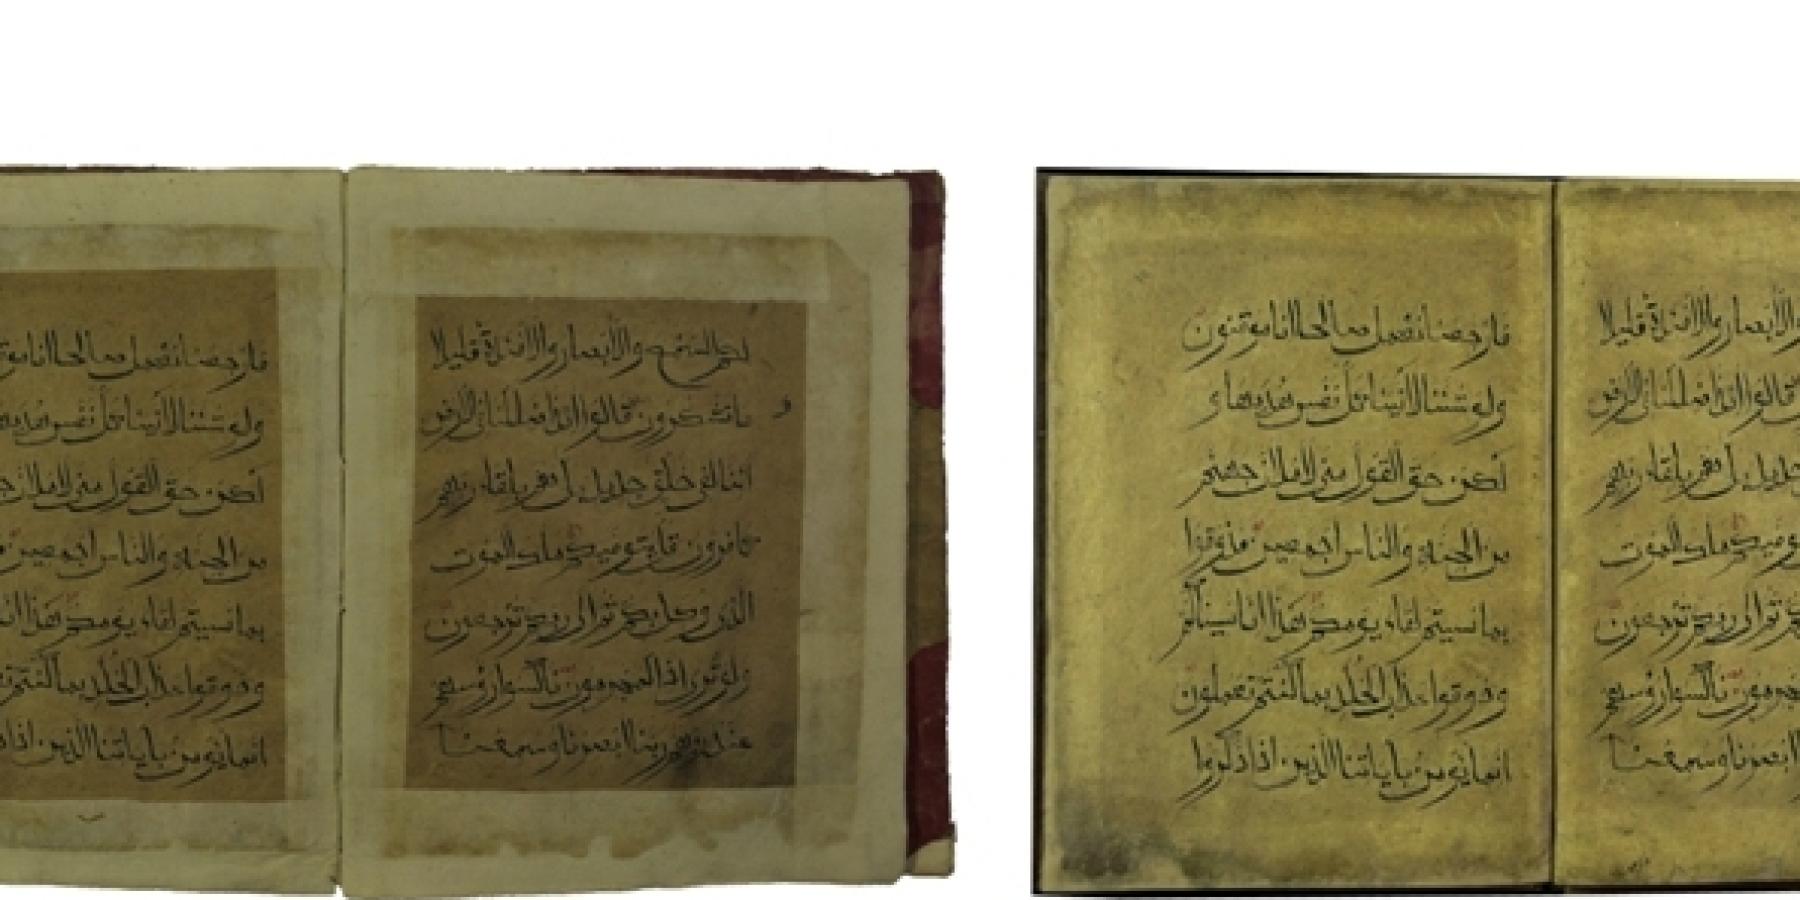 شعبة المخطوطات تنجز صيانة وترميم وتصوير أكثر من 800 مخطوطة ووثيقة تاريخية تعود إلى قرون غابرة